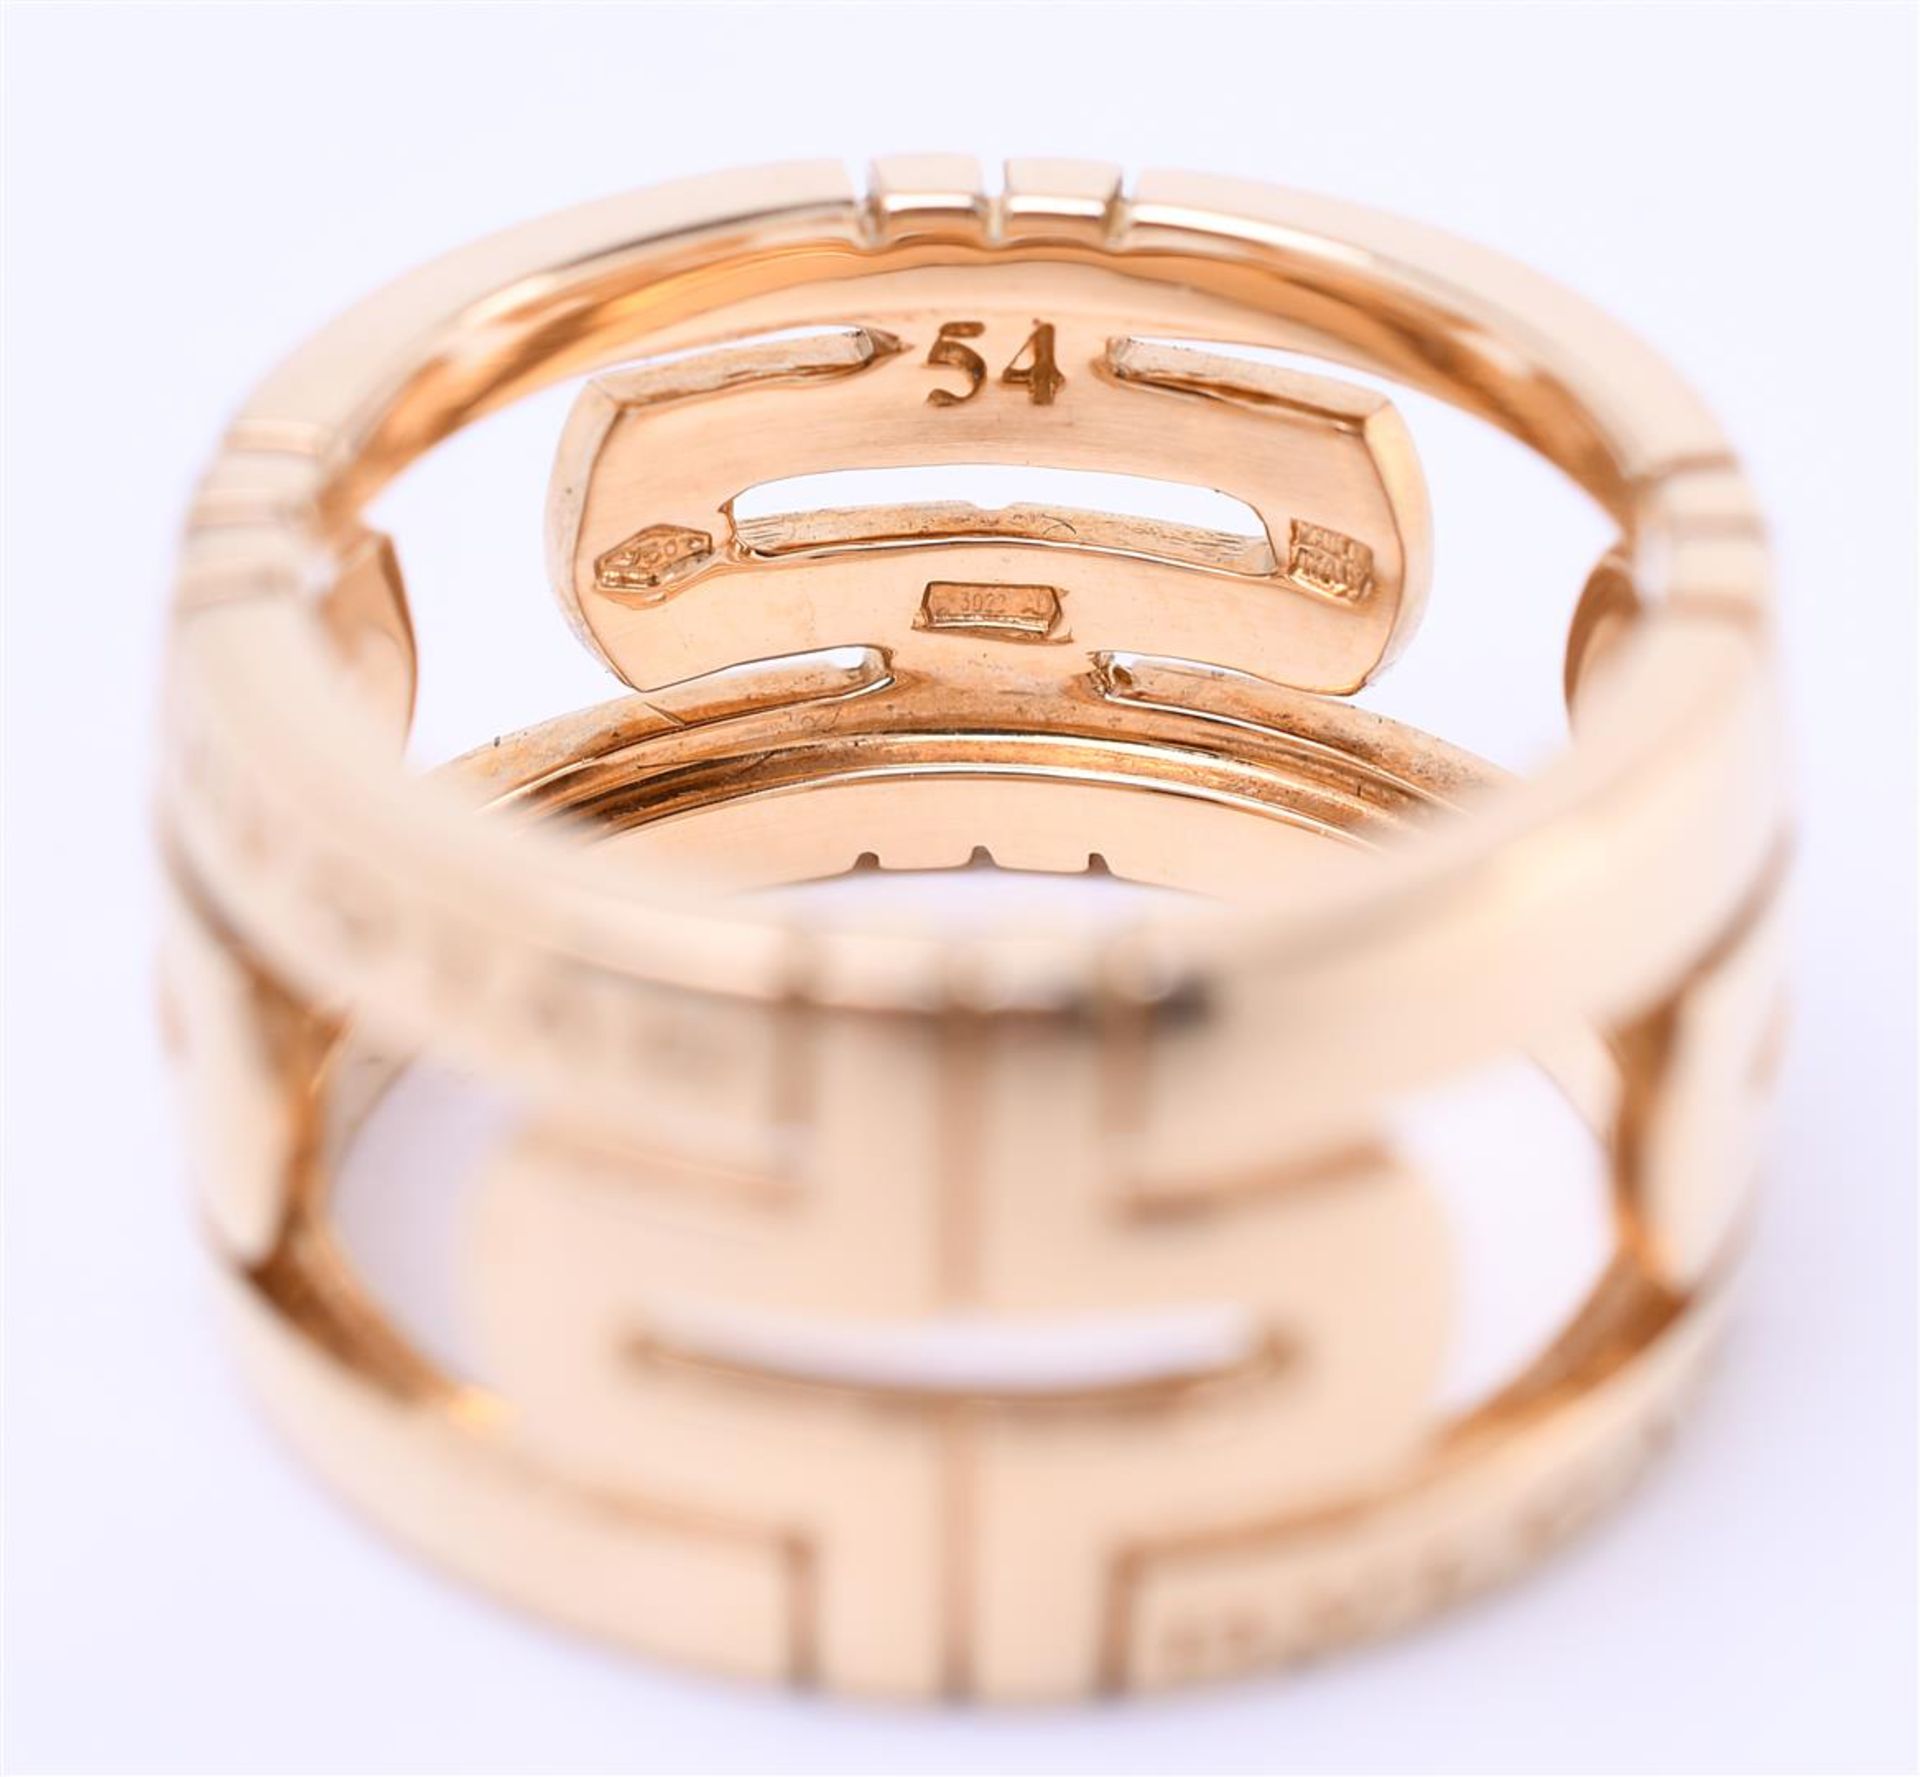 18kt yellow gold Bulgari Parentesi ring. Ring weight: 11.5 grams. Ring size 54 / 17 mm. Inspection m - Bild 4 aus 4